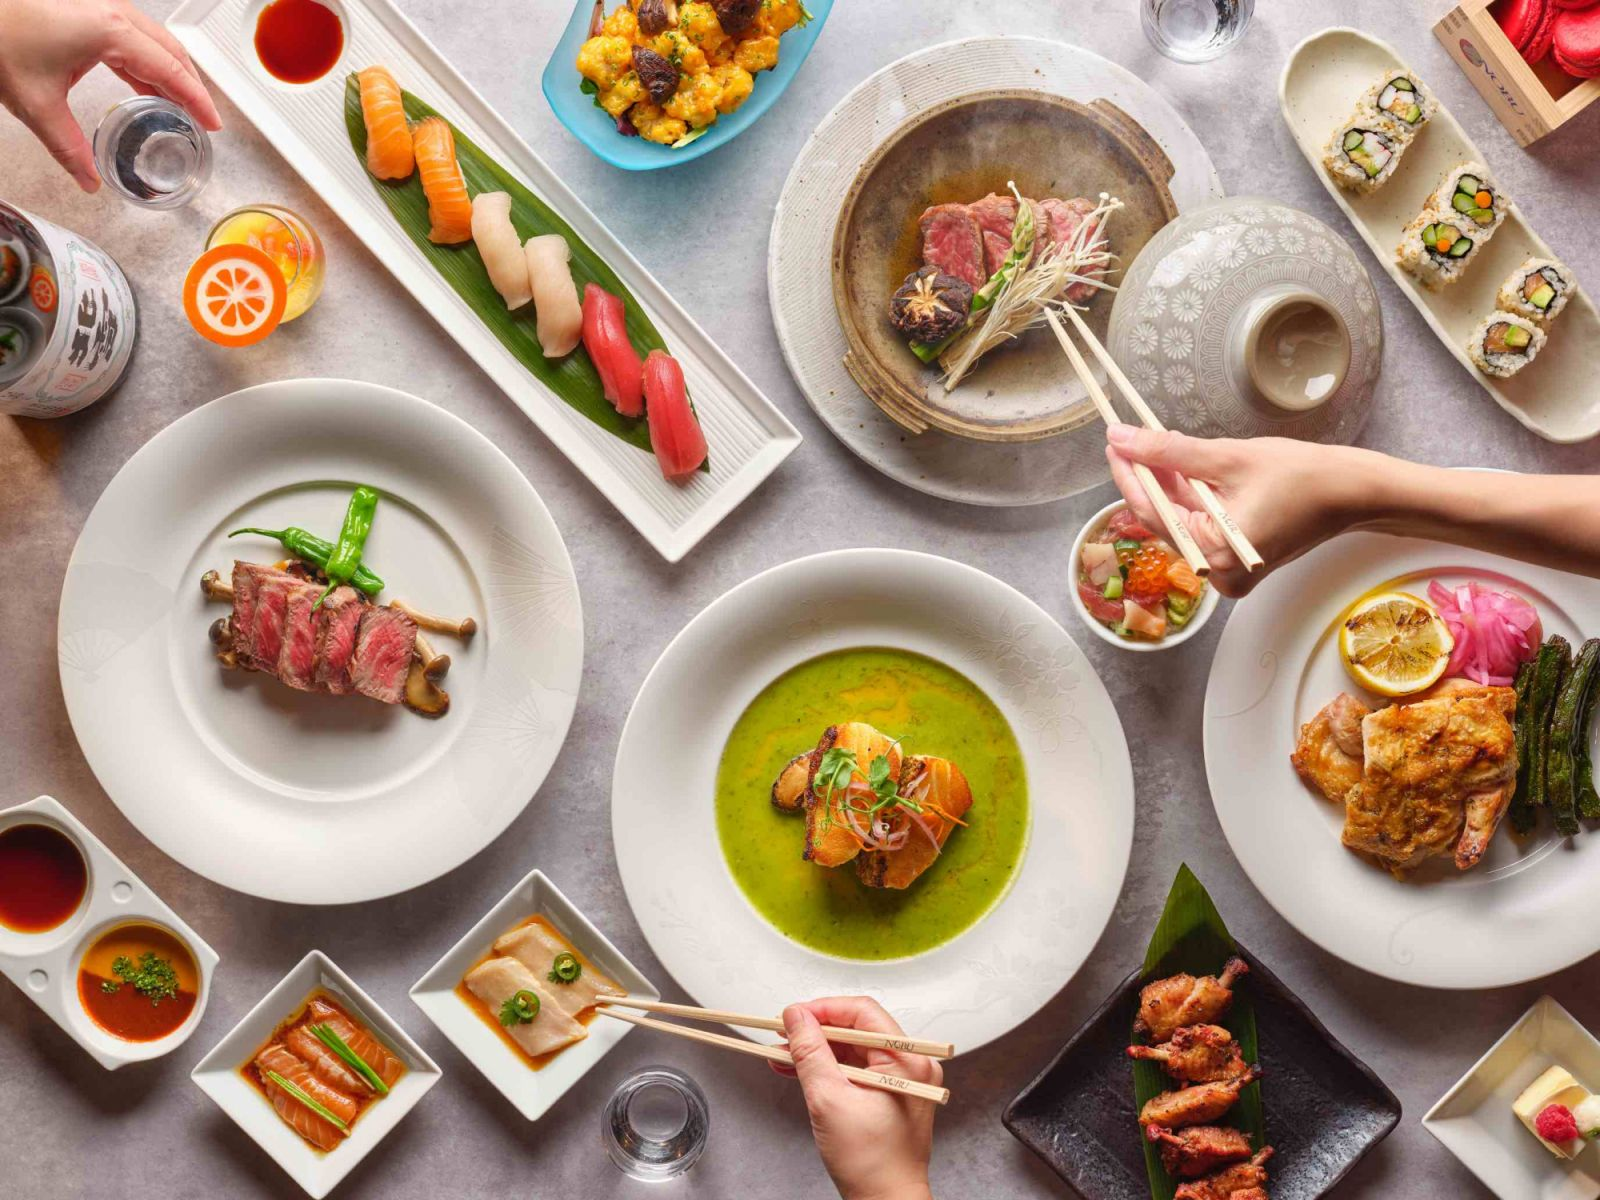 Nghệ thuật fusion cuisine - Sự kết hợp văn hóa hấp dẫn trên bữa ănn